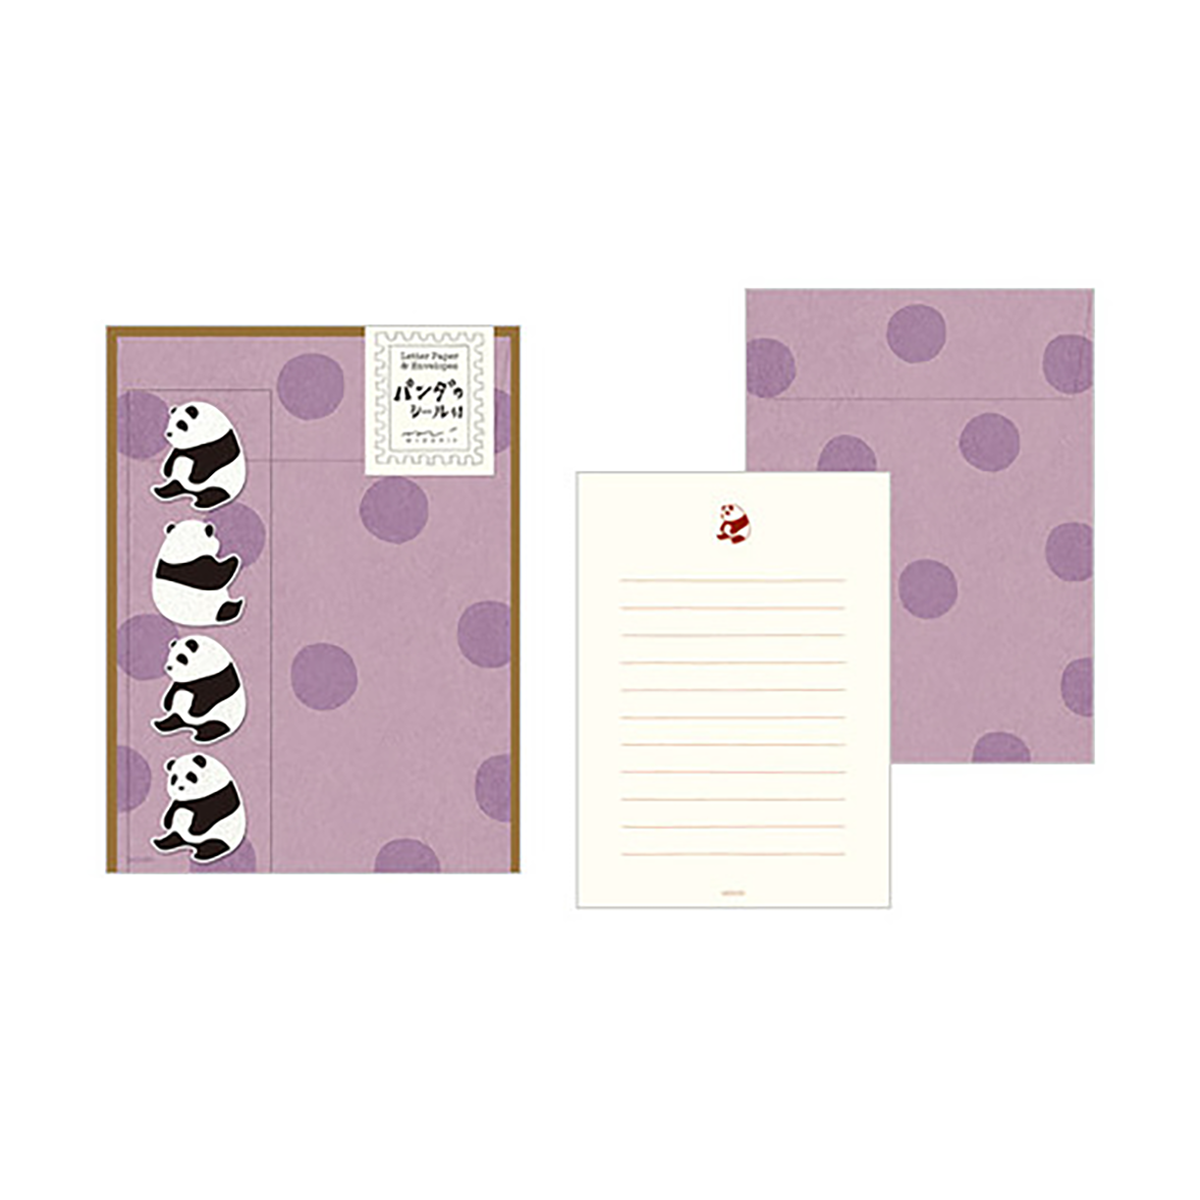 Midori Stationery Set w/ Stickers, Panda